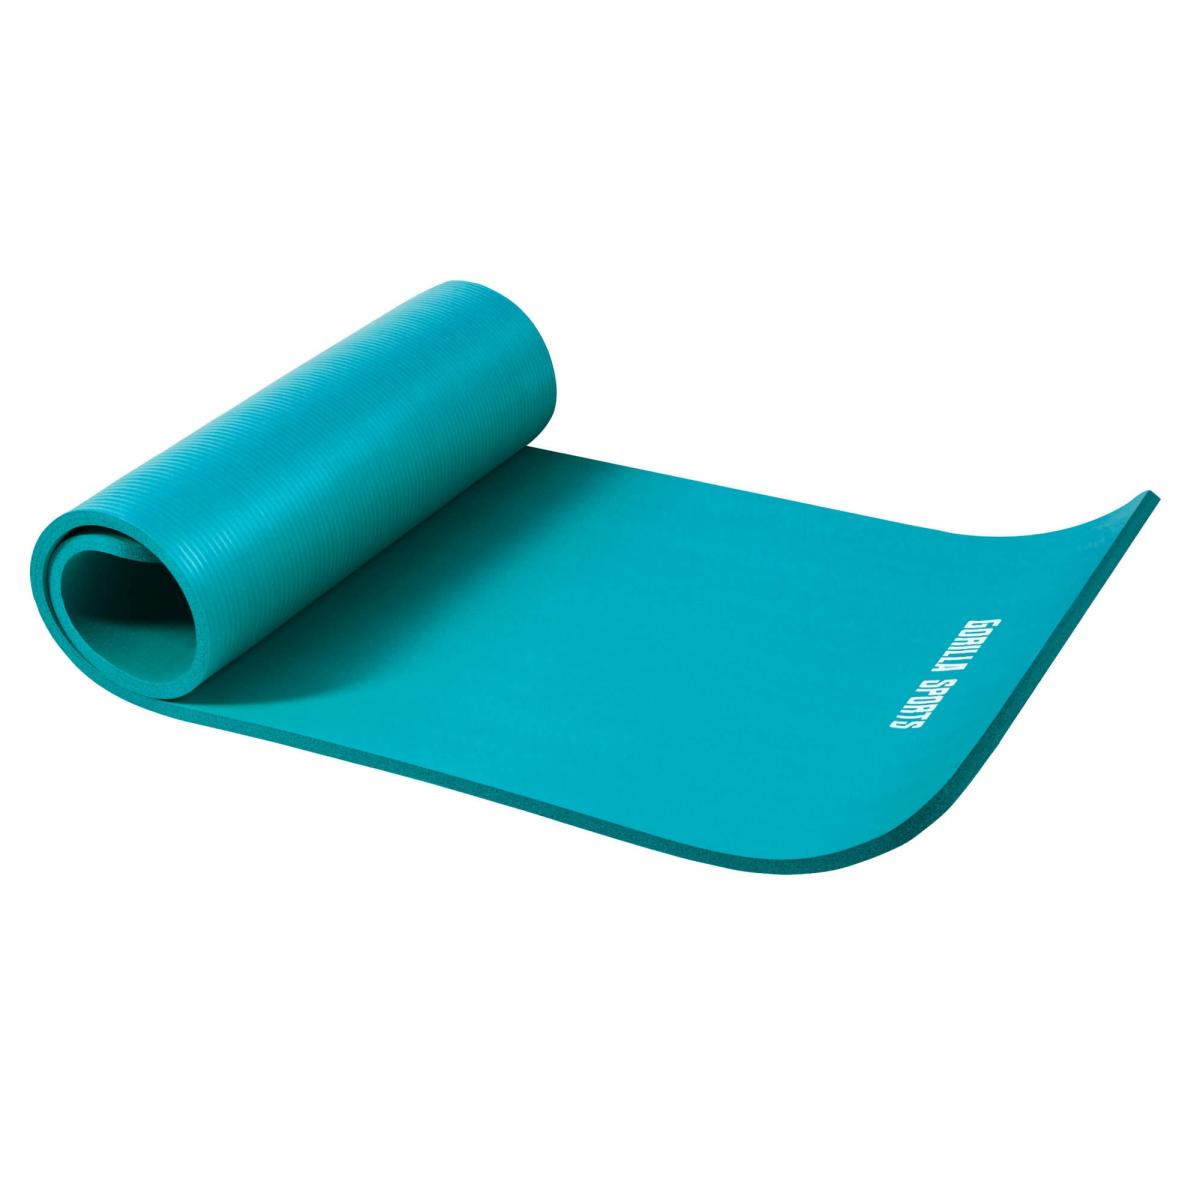 Petit tapis de yoga en mousse - 190 x 60 x 1,5 cm (Yoga - Pilates - sport Ã domicile) Bleu